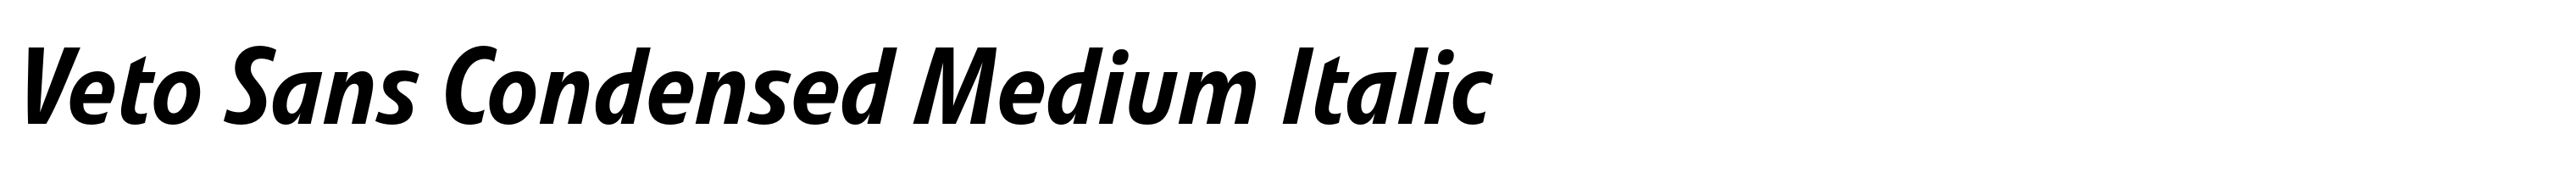 Veto Sans Condensed Medium Italic